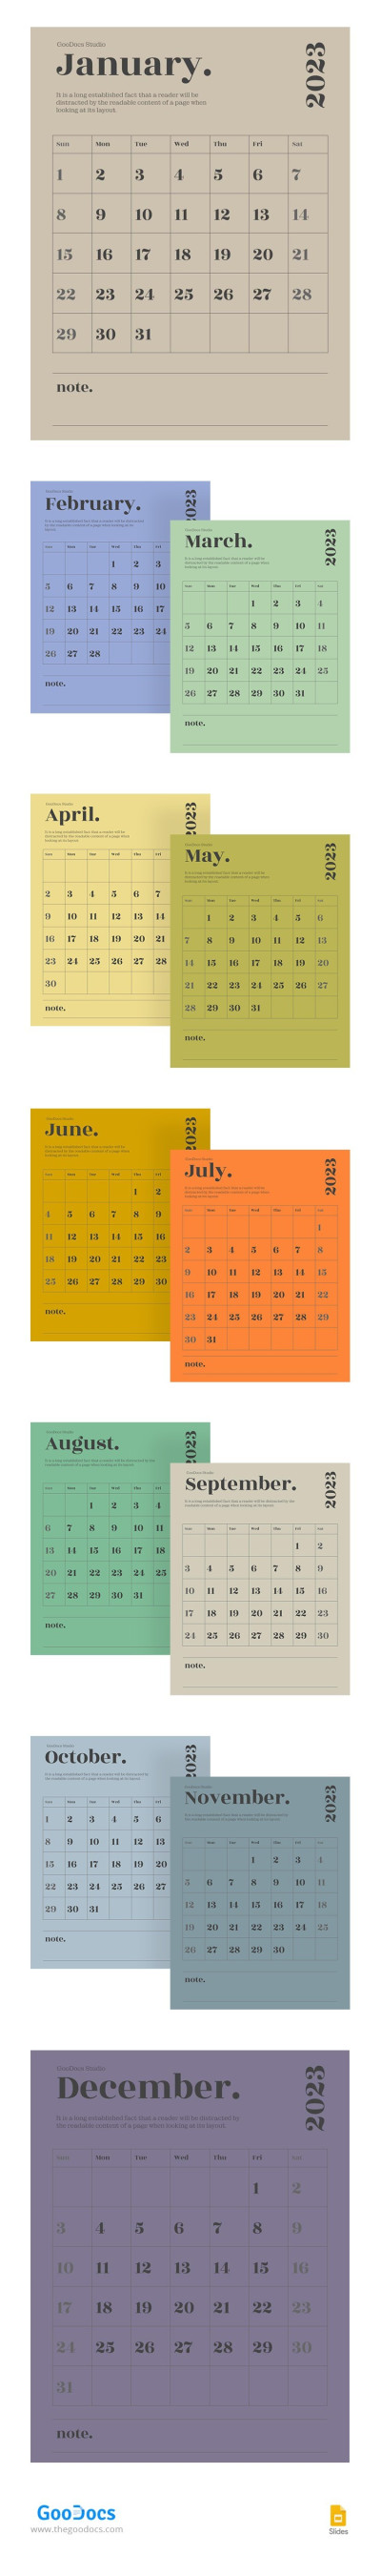 Modern School Calendar Template